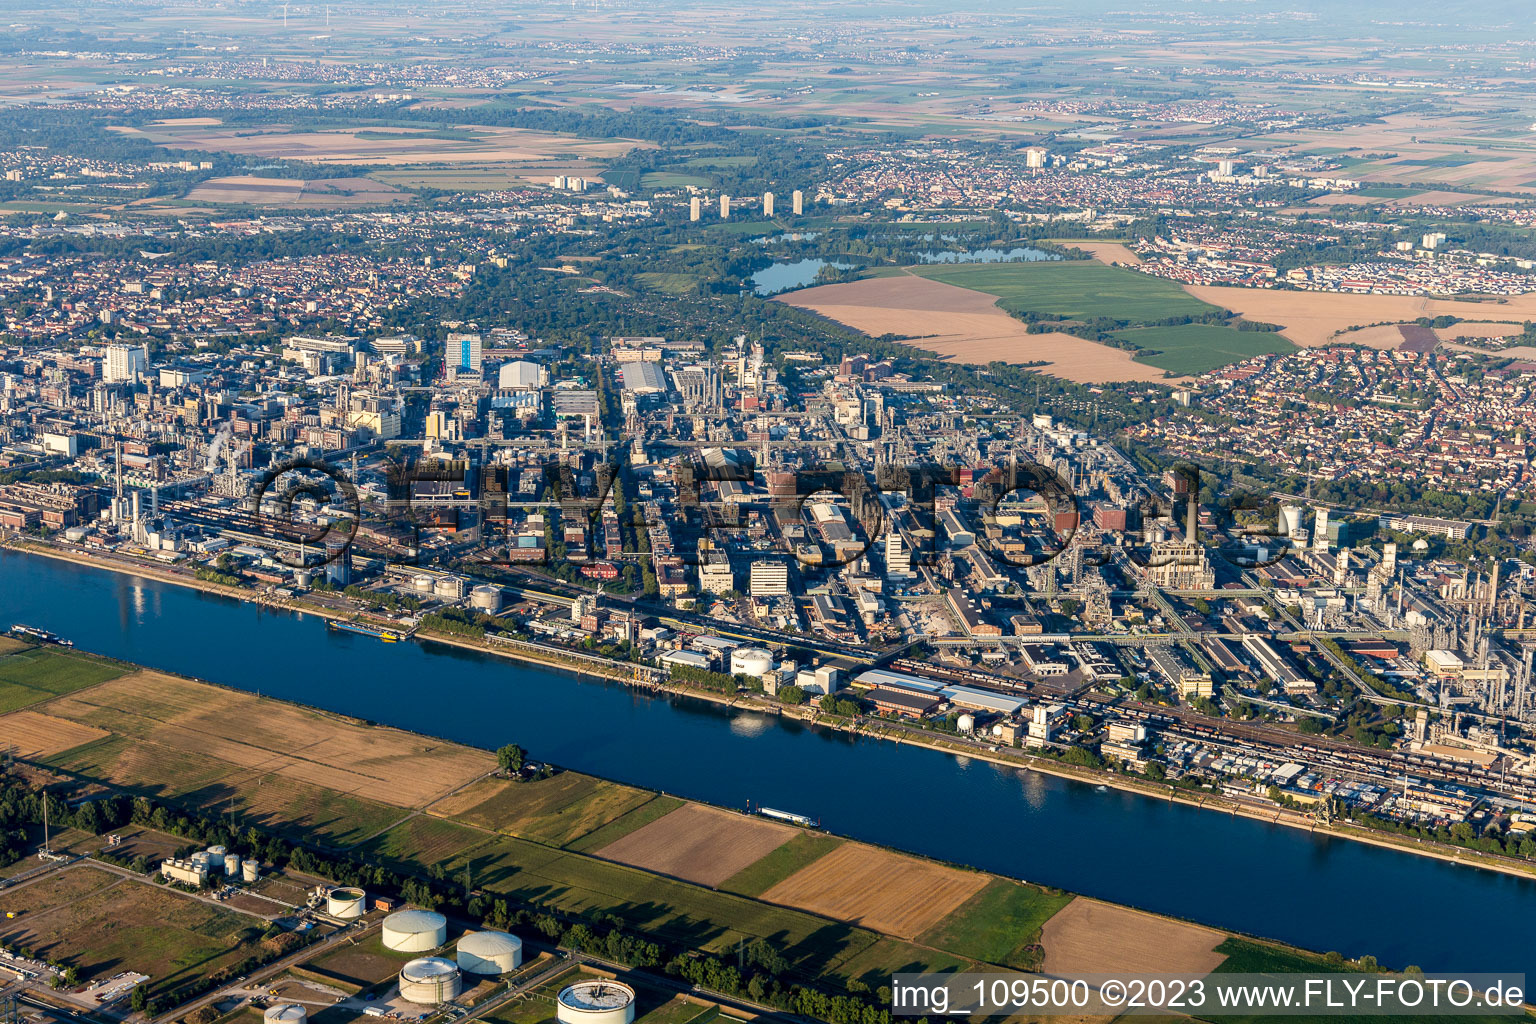 Ortsteil BASF in Ludwigshafen am Rhein im Bundesland Rheinland-Pfalz, Deutschland aus der Luft betrachtet